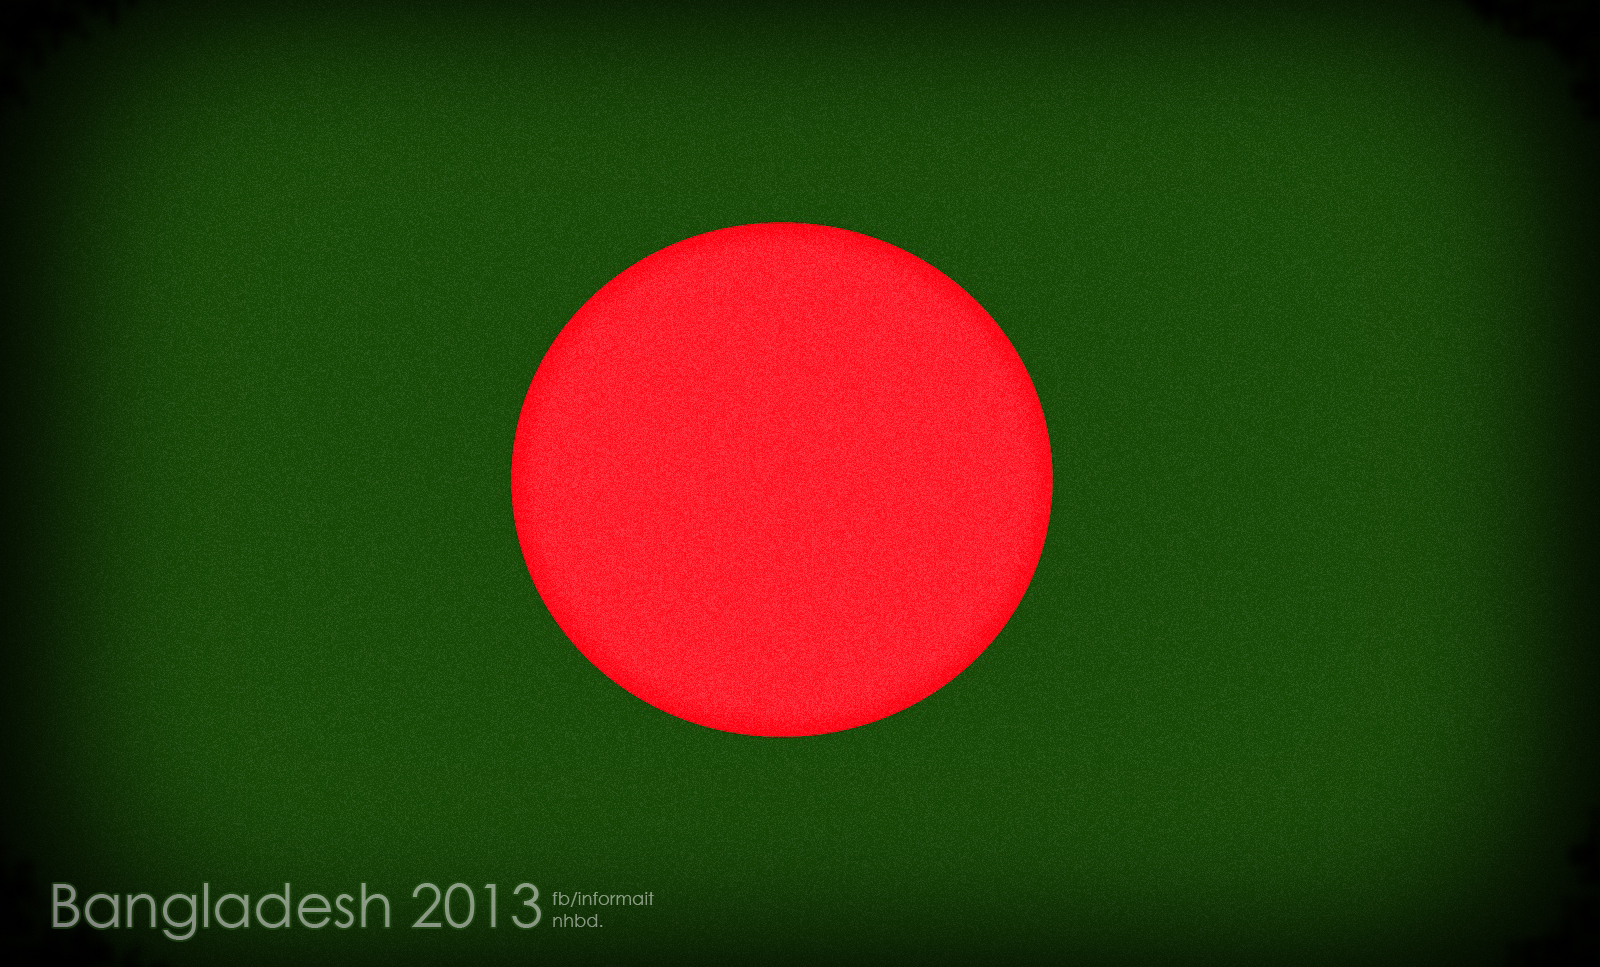 bangladesh flag wallpaper hd,rosso,verde,cerchio,colorfulness,bandiera